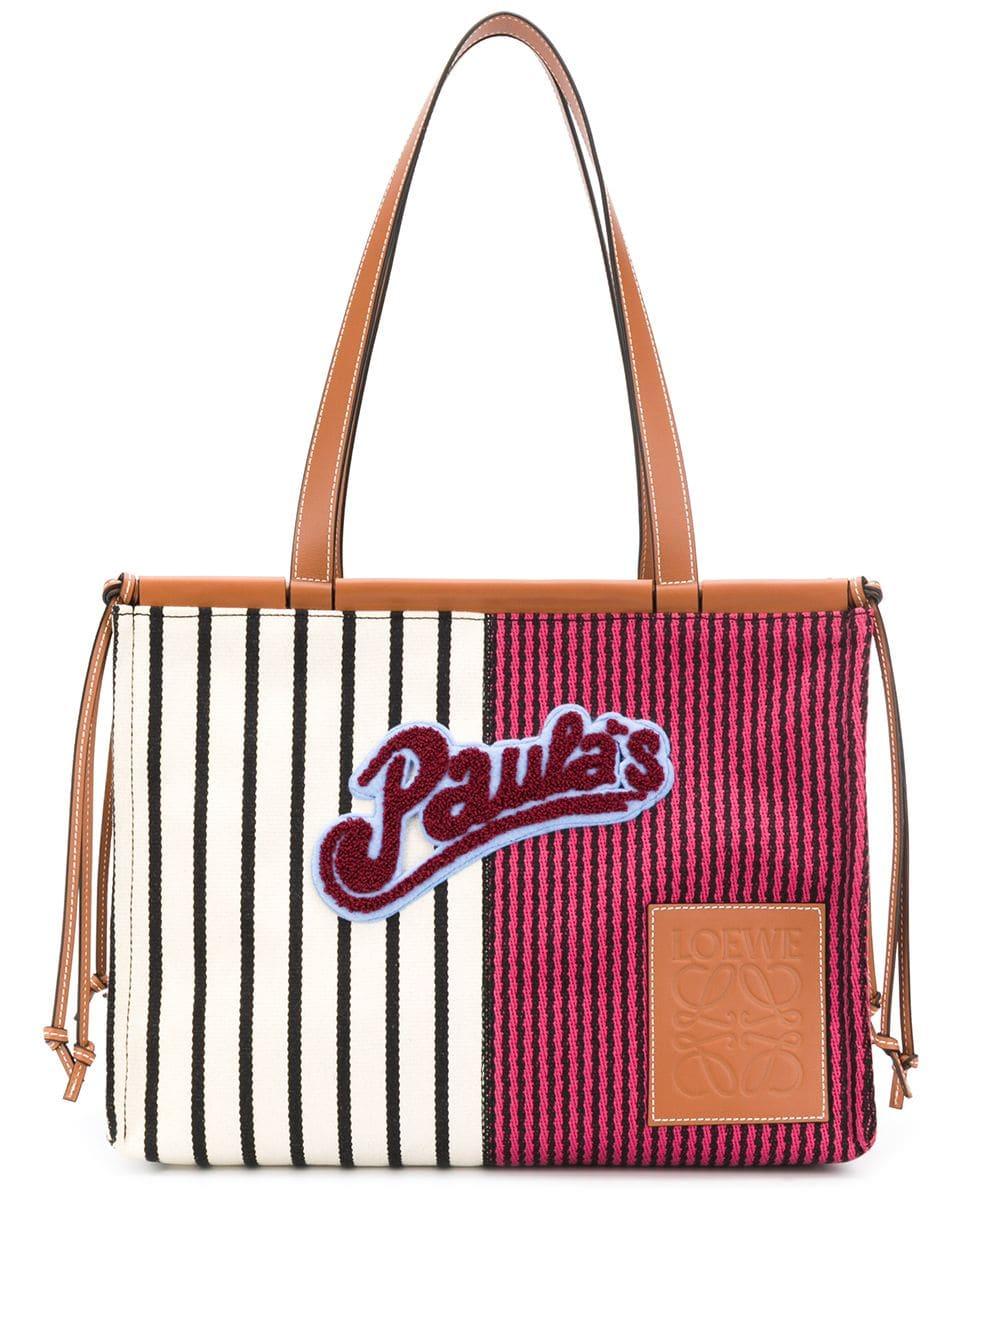 Loewe Canvas X Paula's Ibiza Stripes Cushion Tote Bag in Red | Lyst